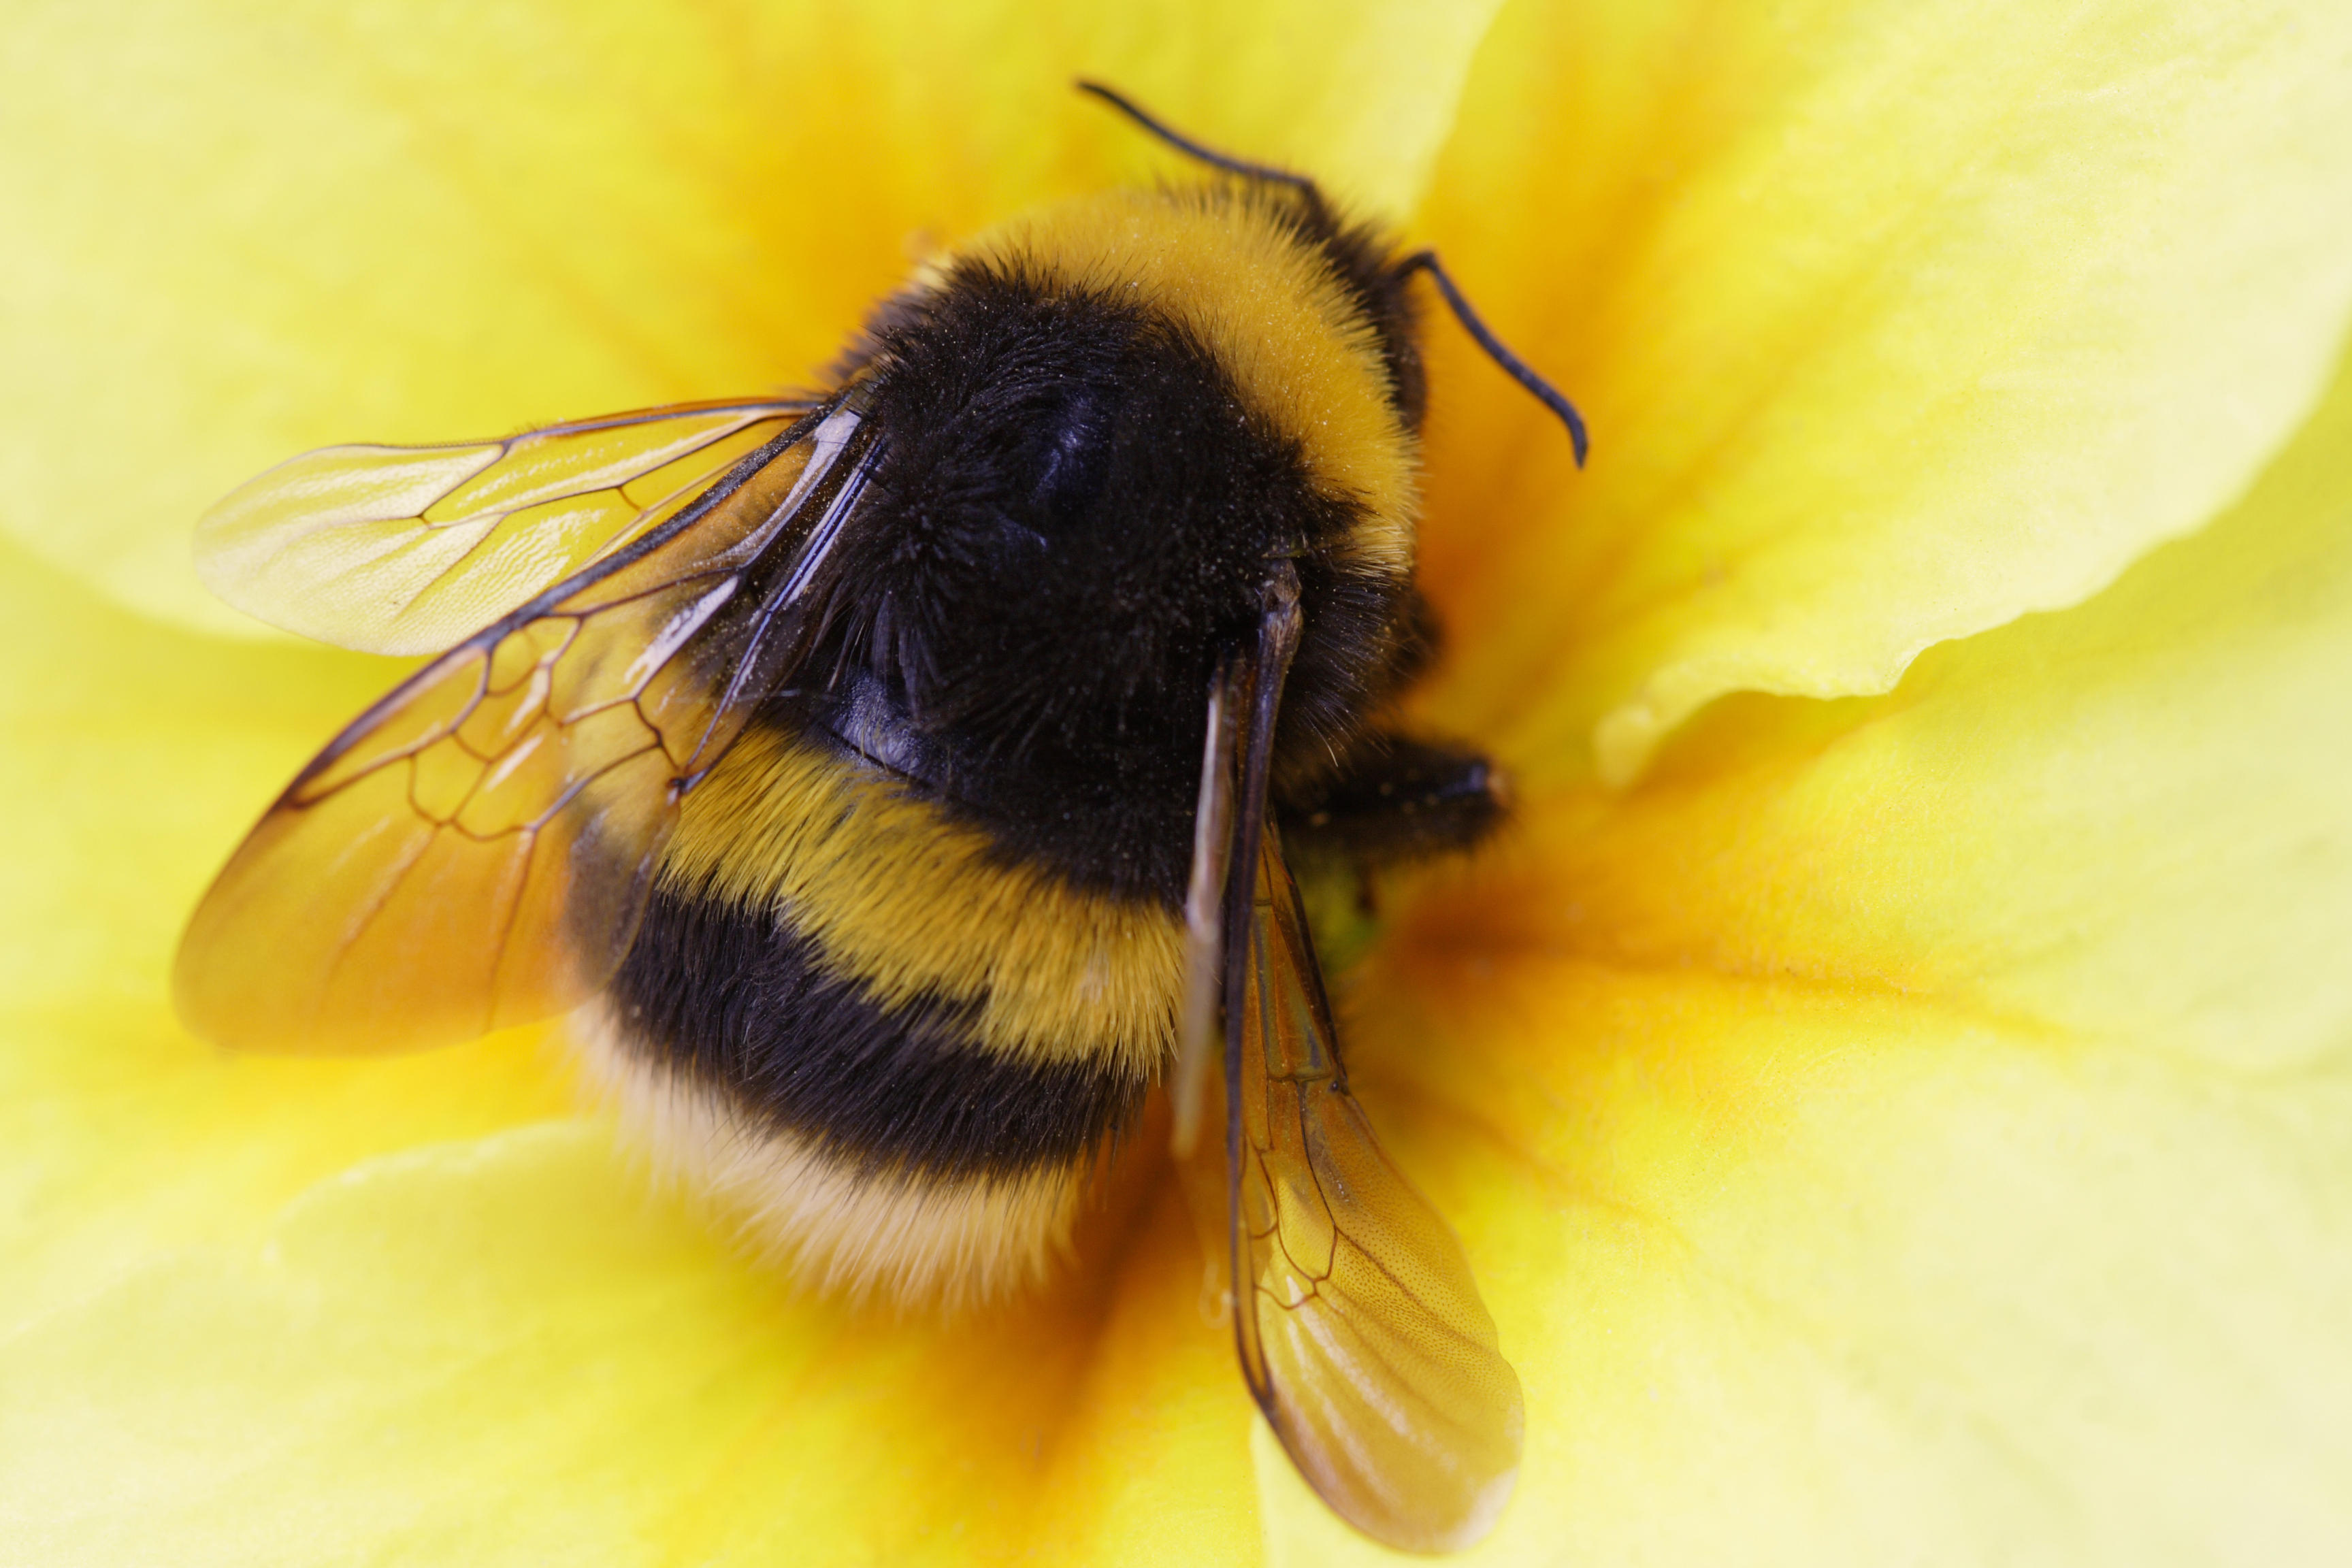 Scientists Reveal 'Major' New Factor in Bumblebee Decline